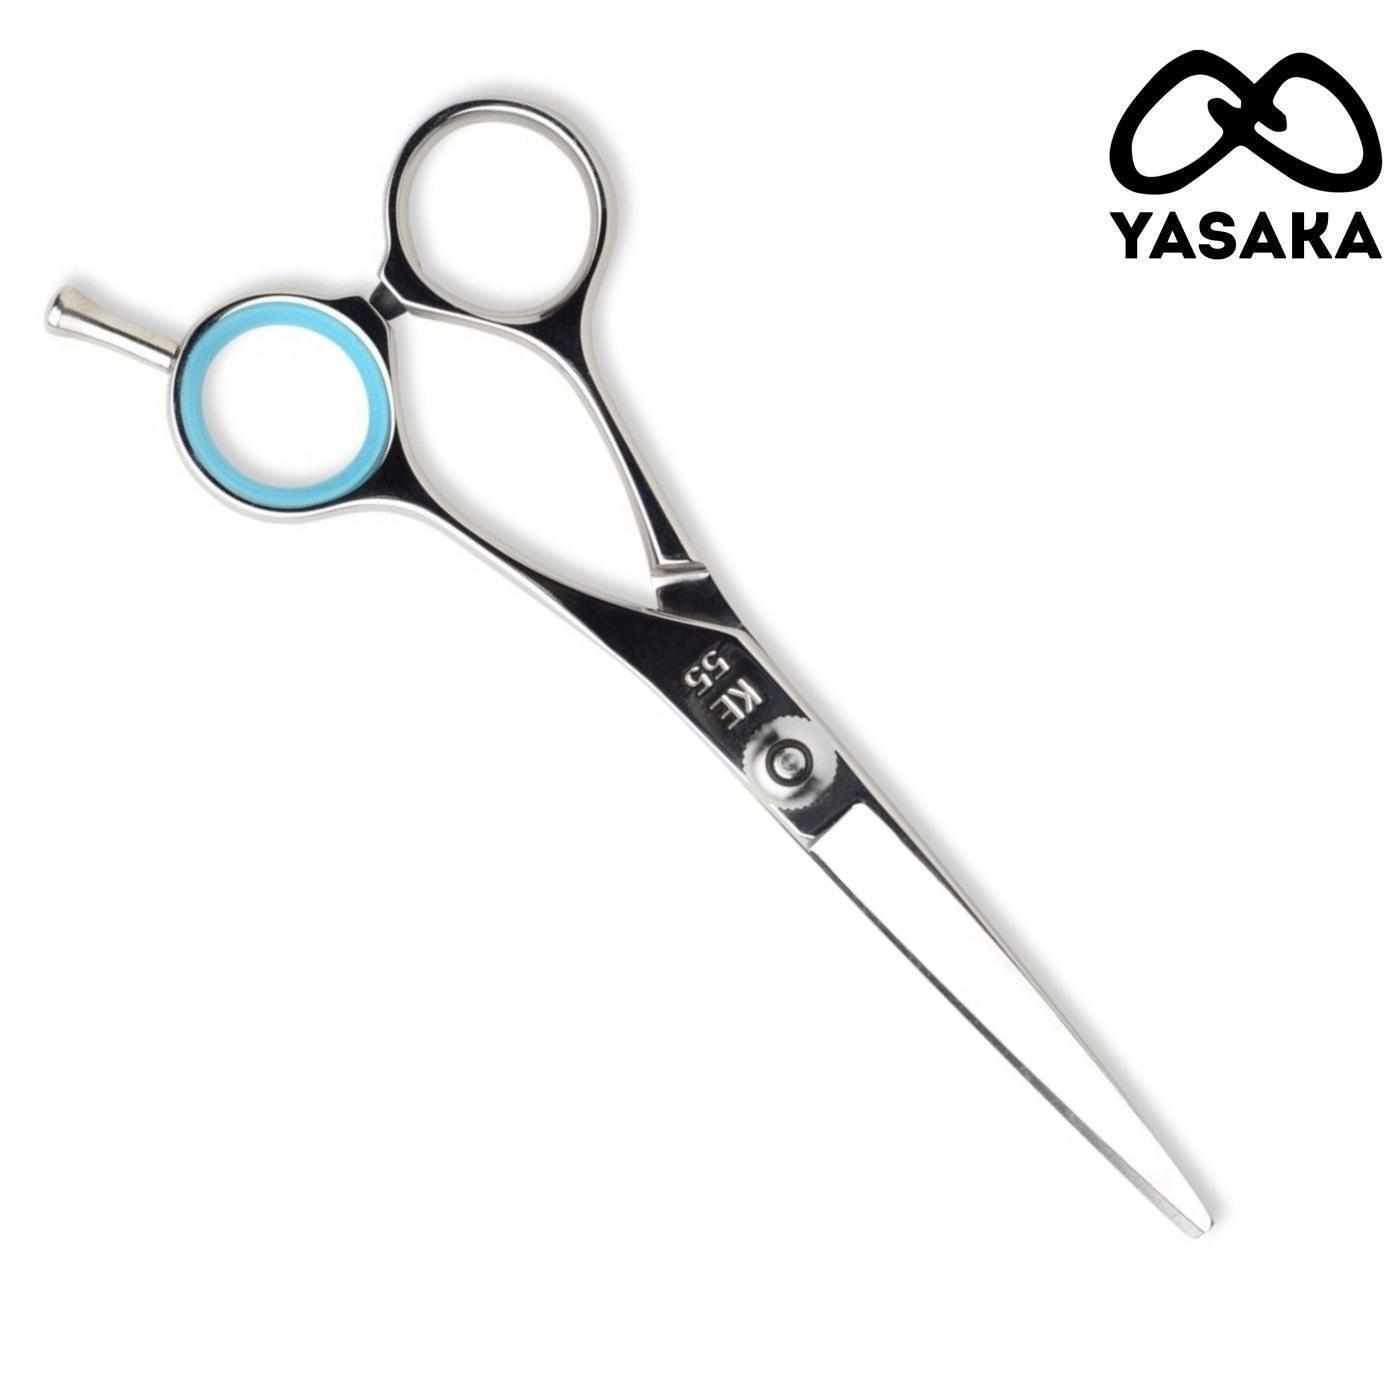 Yasaka KE Hair Cutting Scissors - Japan Scissors USA